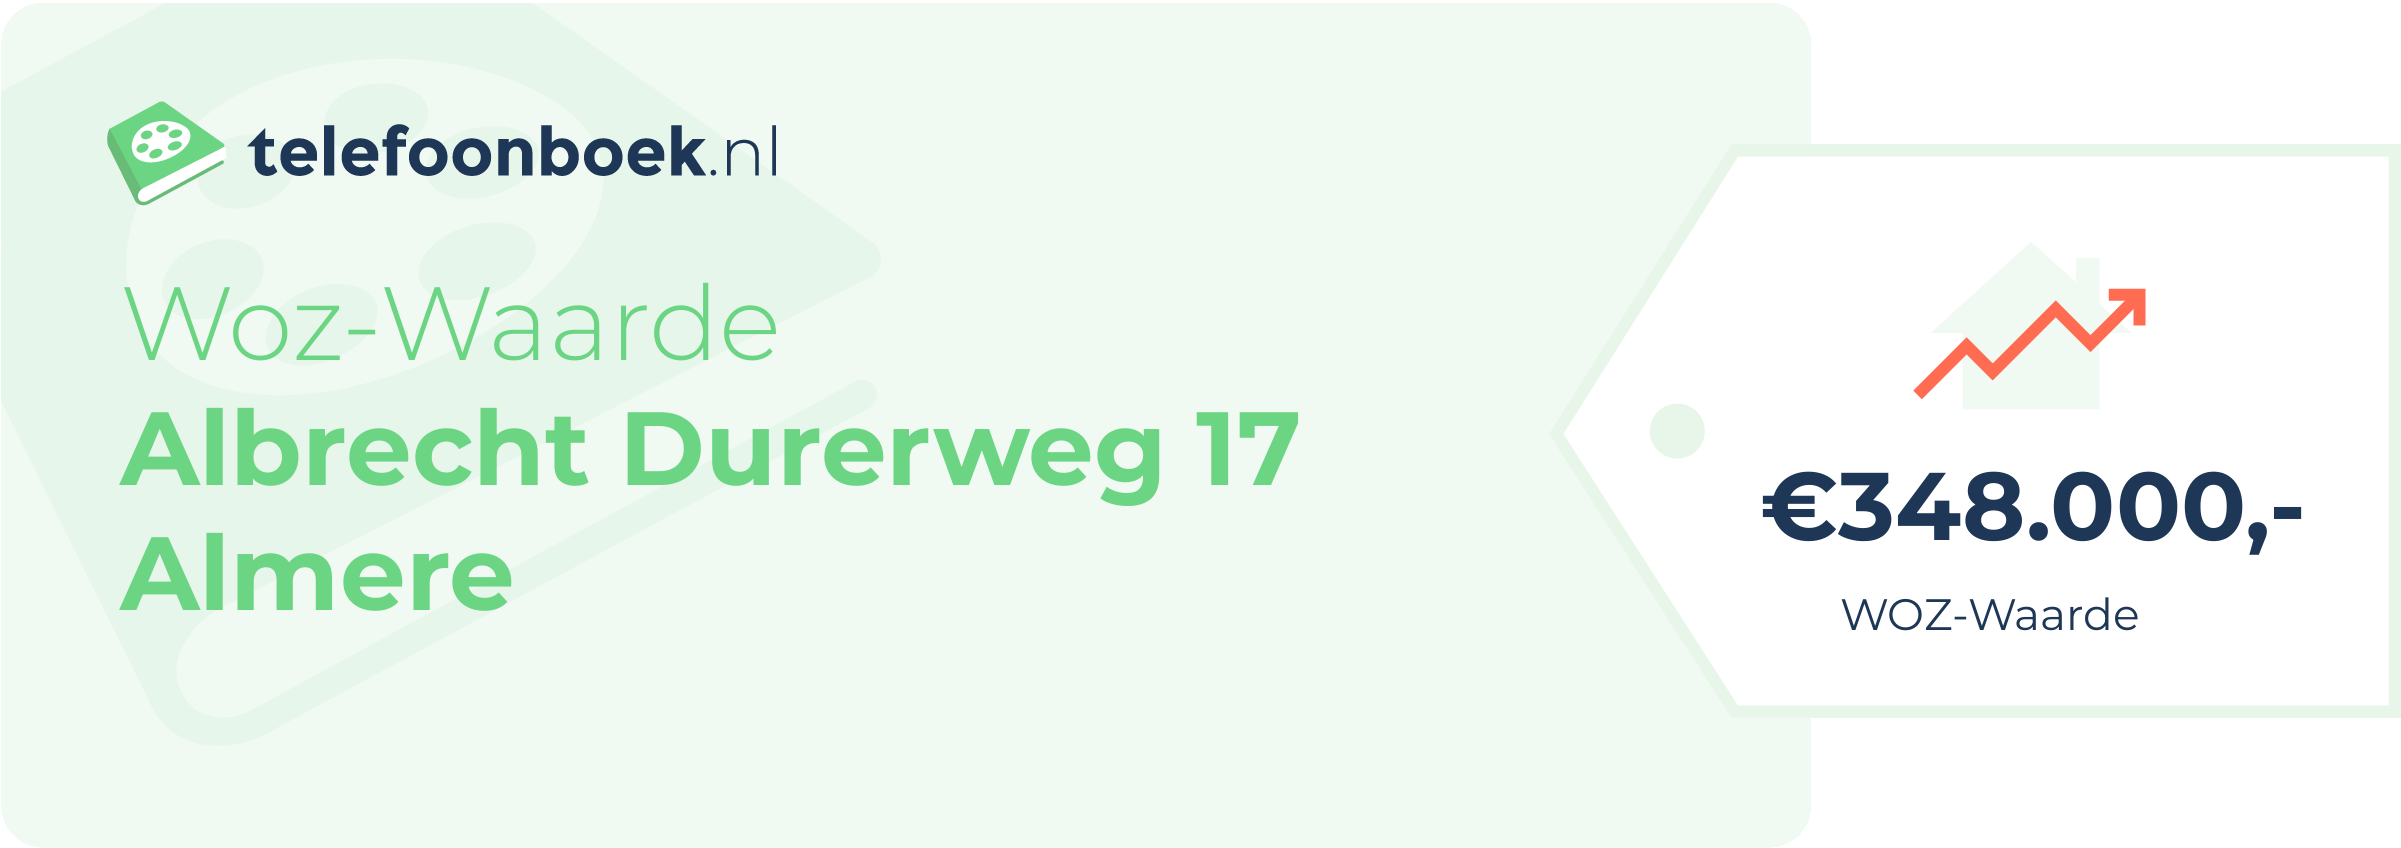 WOZ-waarde Albrecht Durerweg 17 Almere